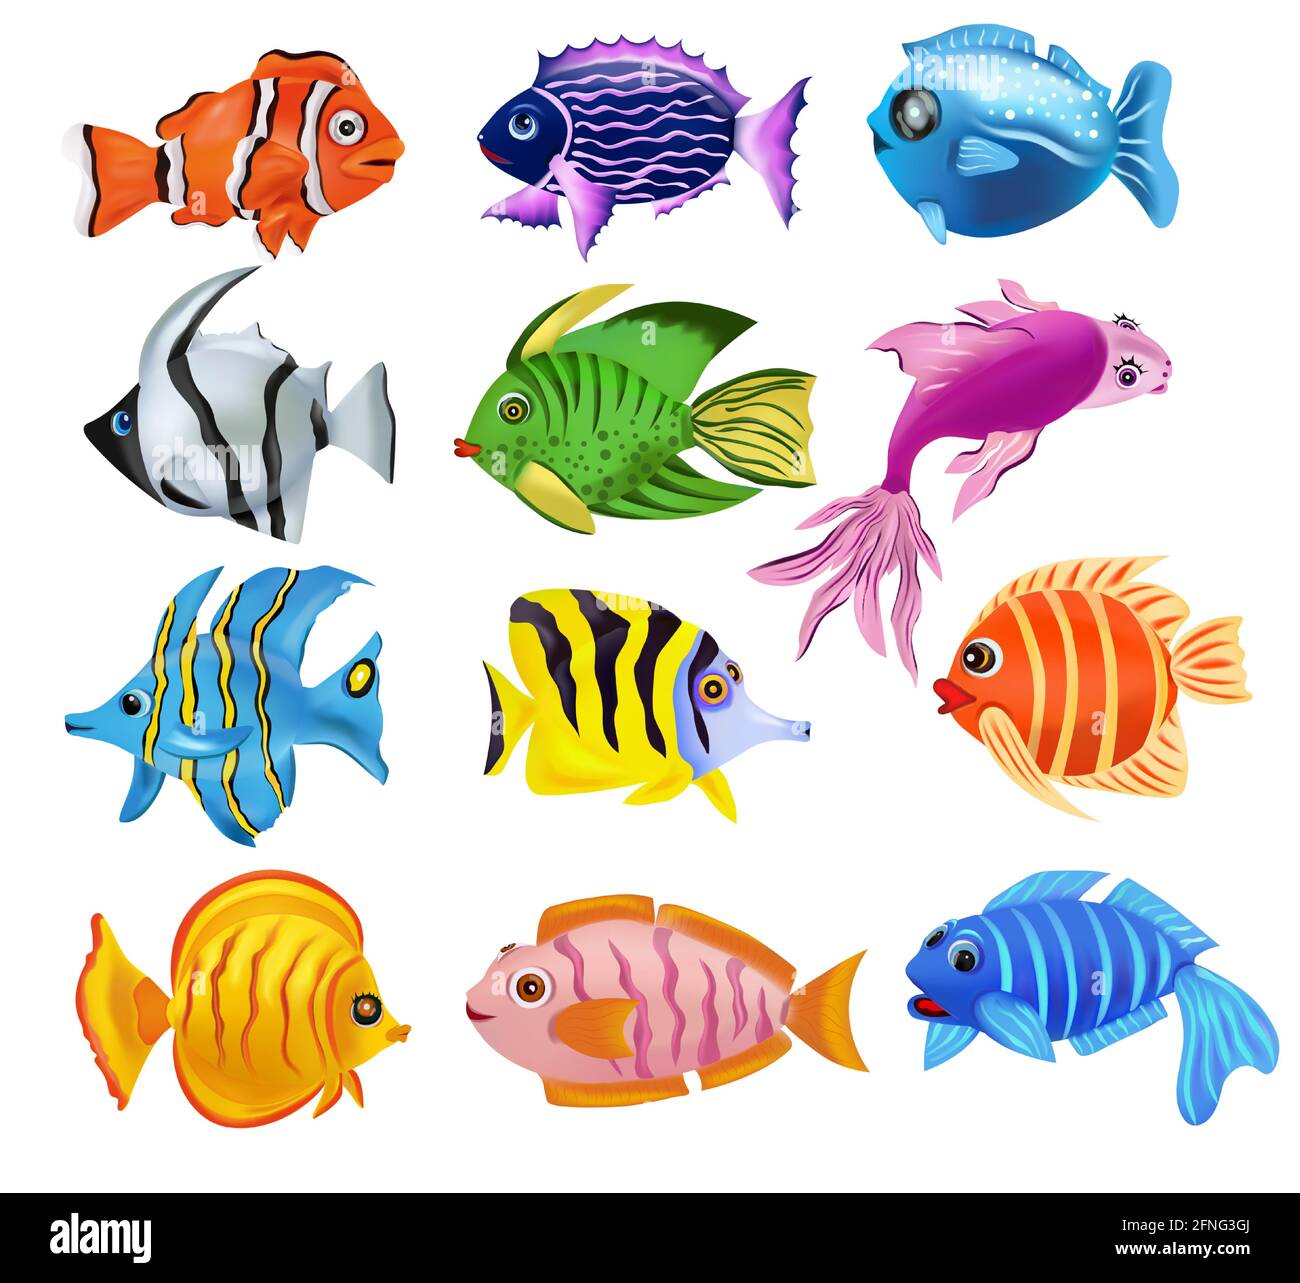 Colección Tropicals peces de colores. Addis Butterfish, el pez ángel francés, el pez arrecife, el pez payaso, y otros. Mundo submarino, Cartoon carácter. Icono de 3D vectores. Ilustración del Vector